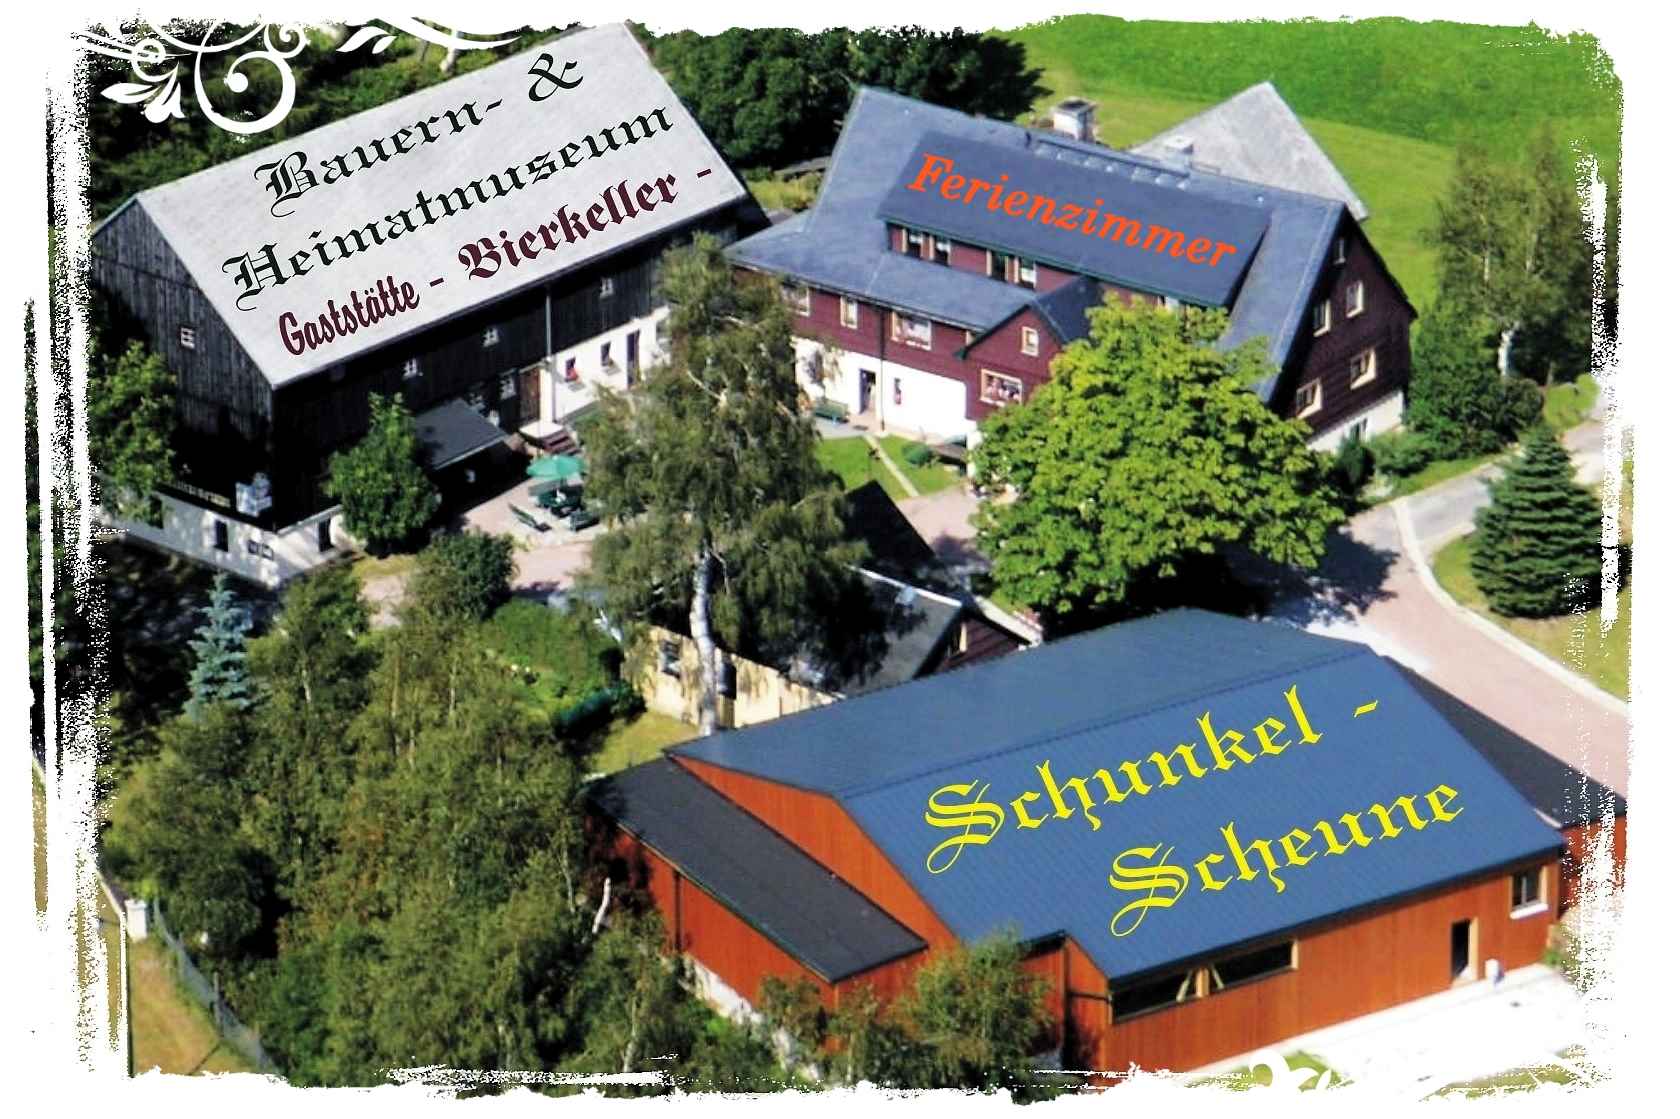 Museum Hermsdorf Erzgebirge Schunkelscheune Bierkeller